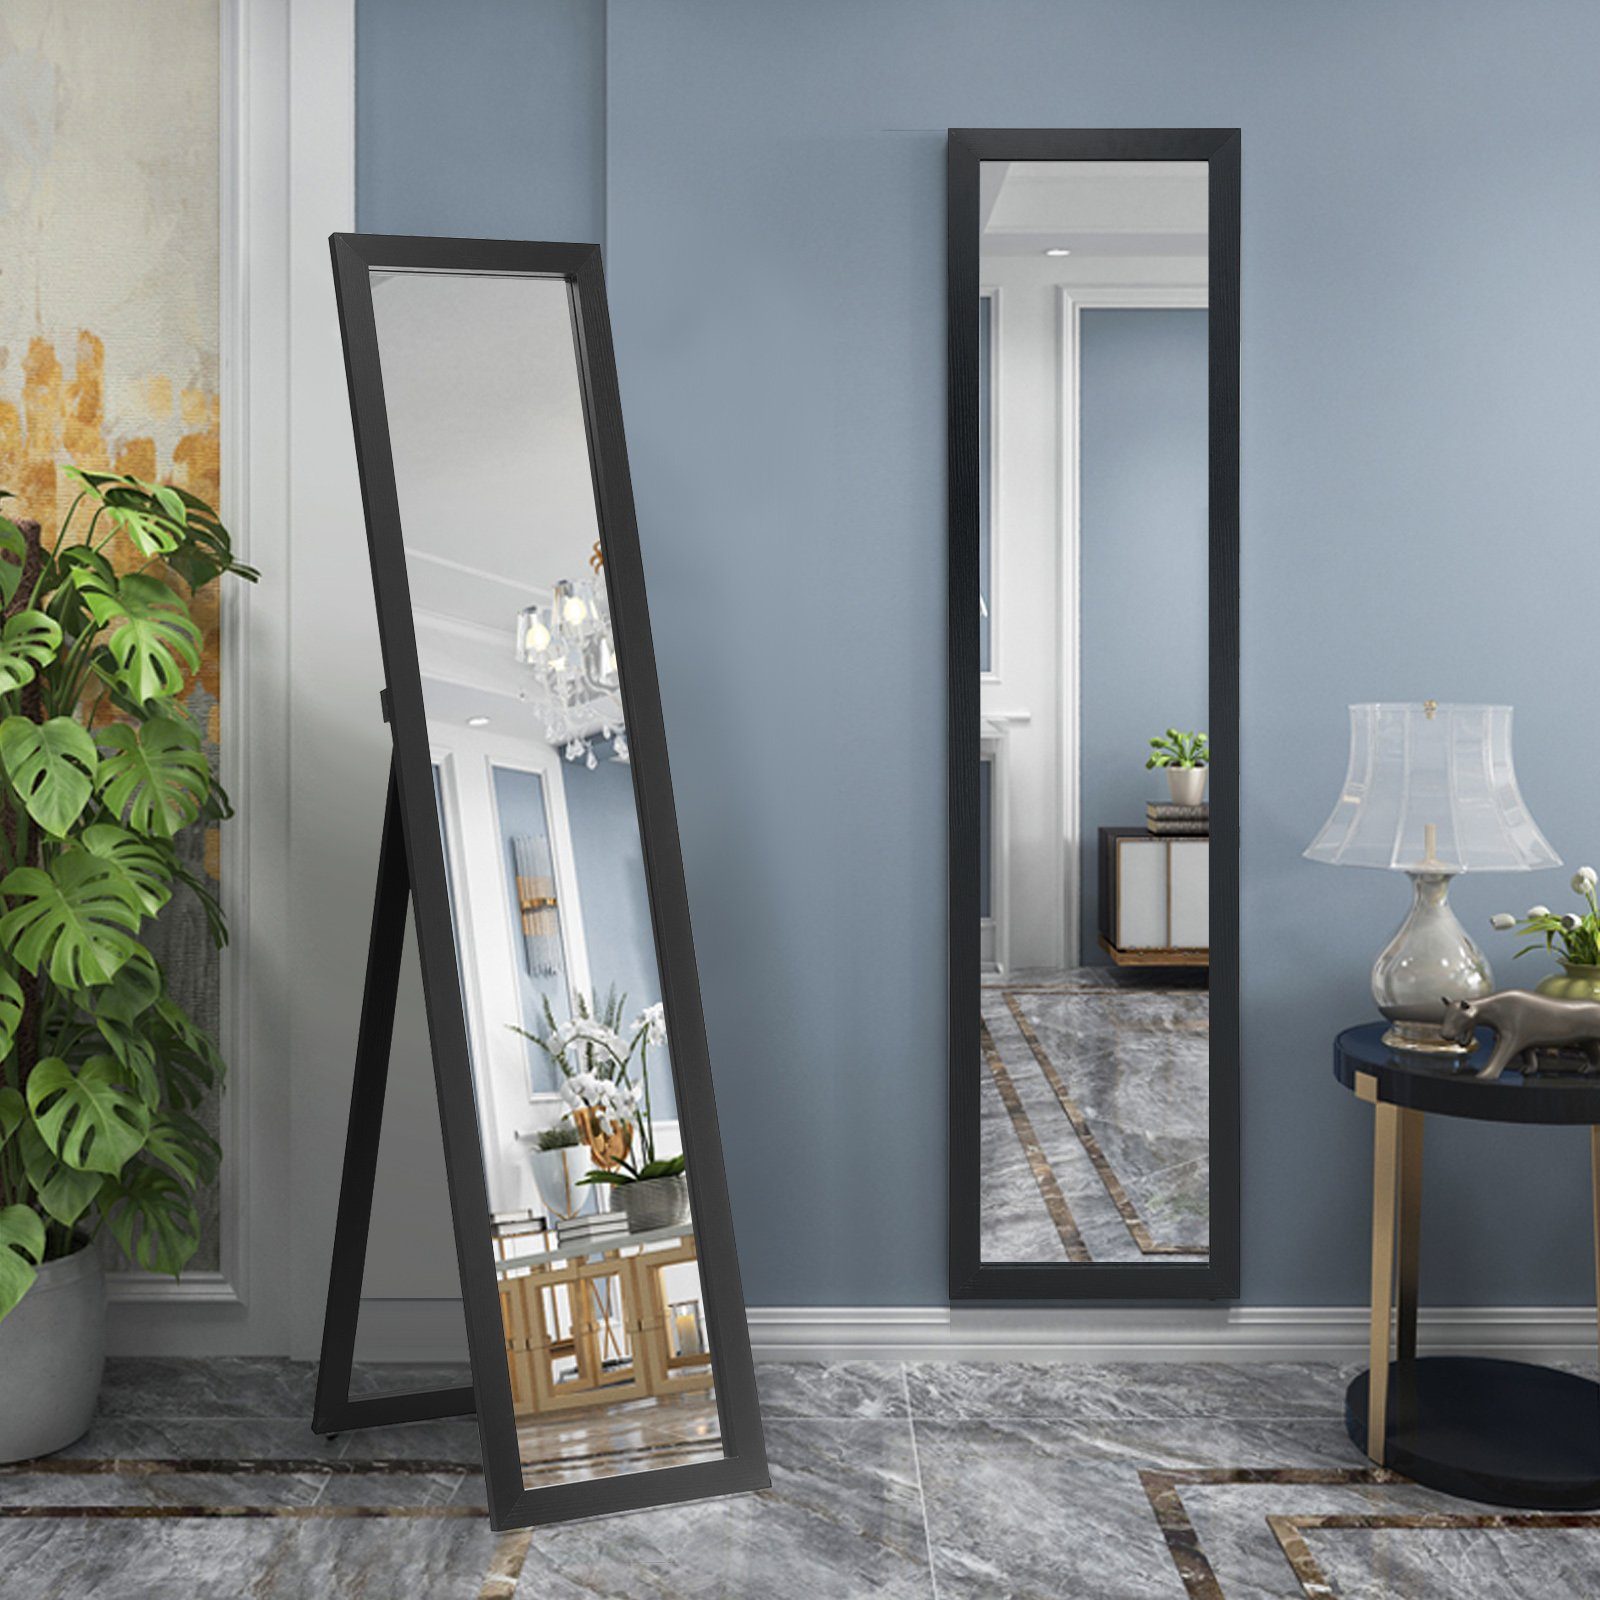  Qeenmy Spiegel aus Glas HD DIY Wandspiegel Lang Spiegelfliesen  Selbstklebend Klebespiegel Klebe Spiegel Groß Wand in Küche, Wohn und  Badezimmer